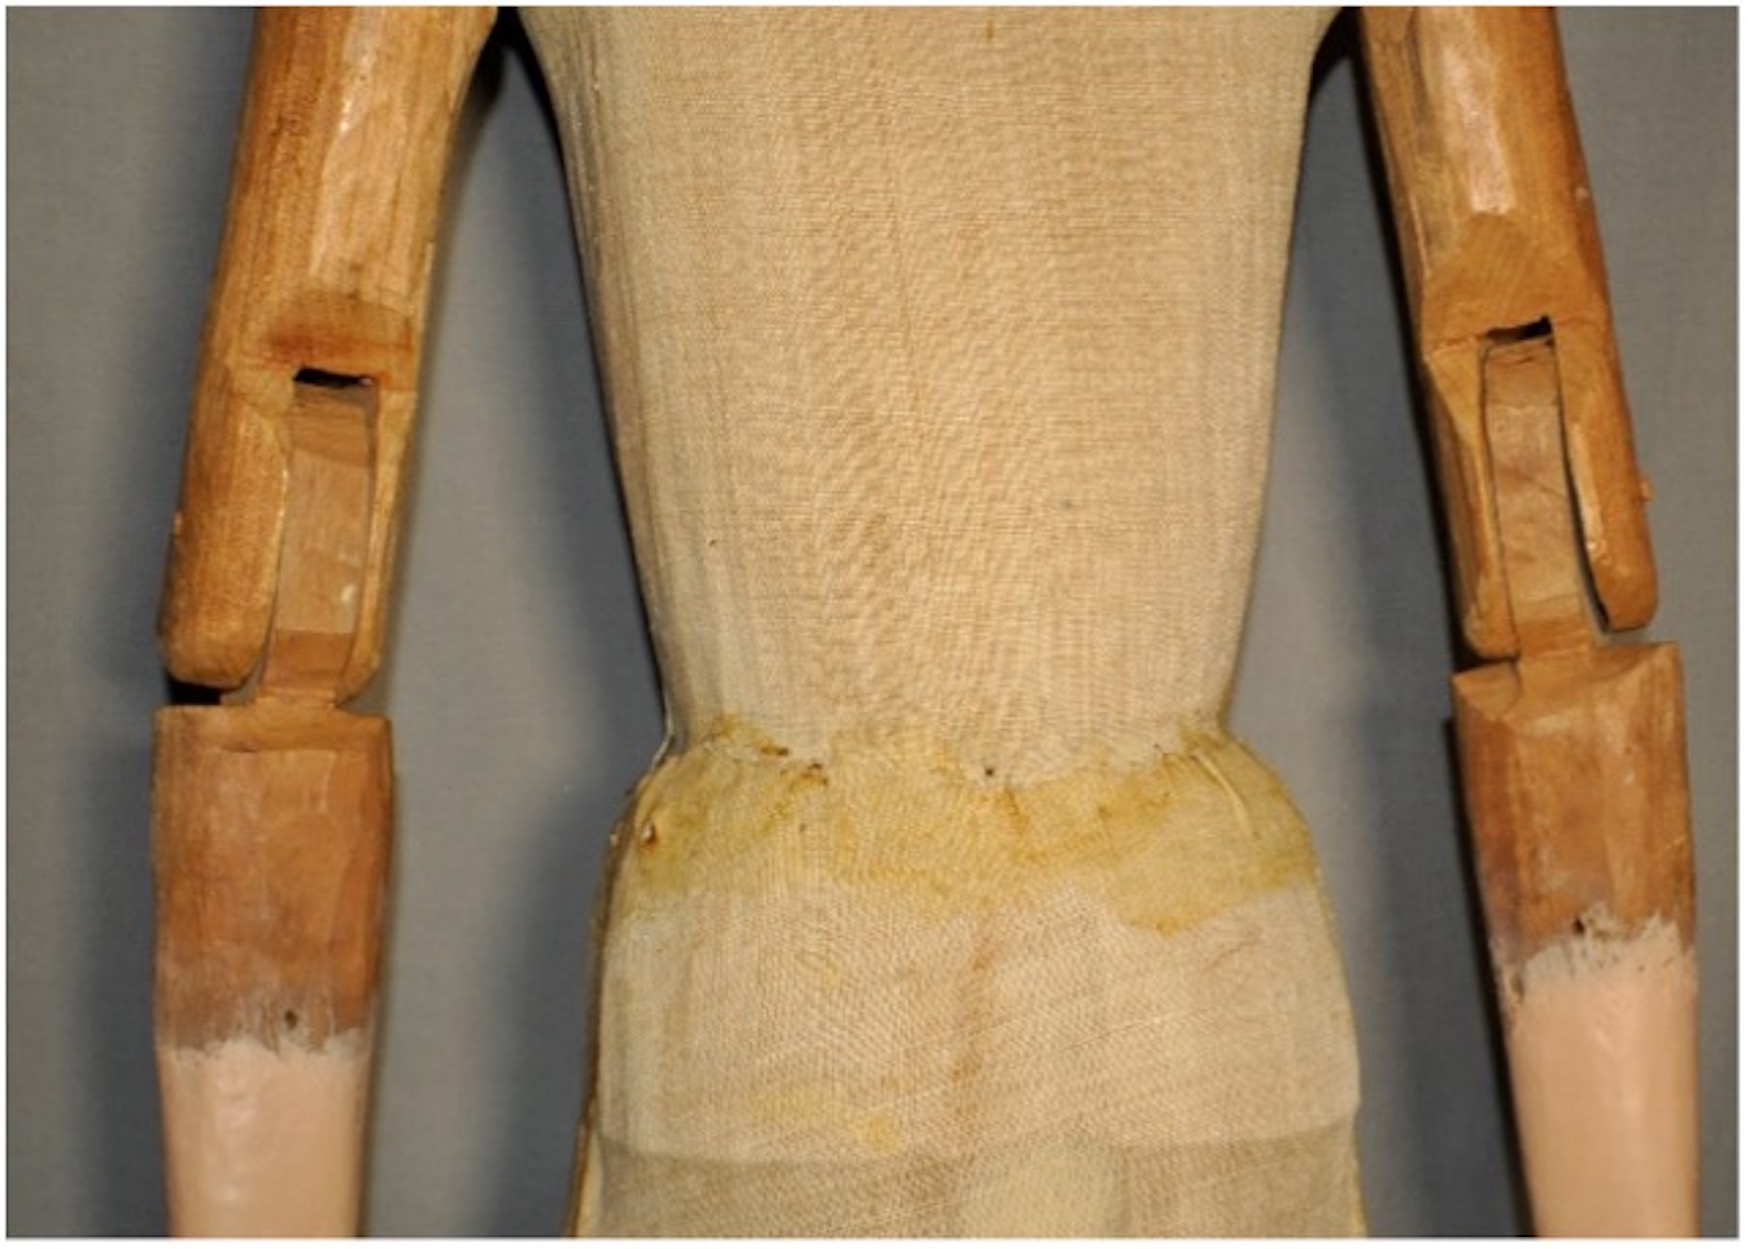 Textil que recubre
el soporte de madera